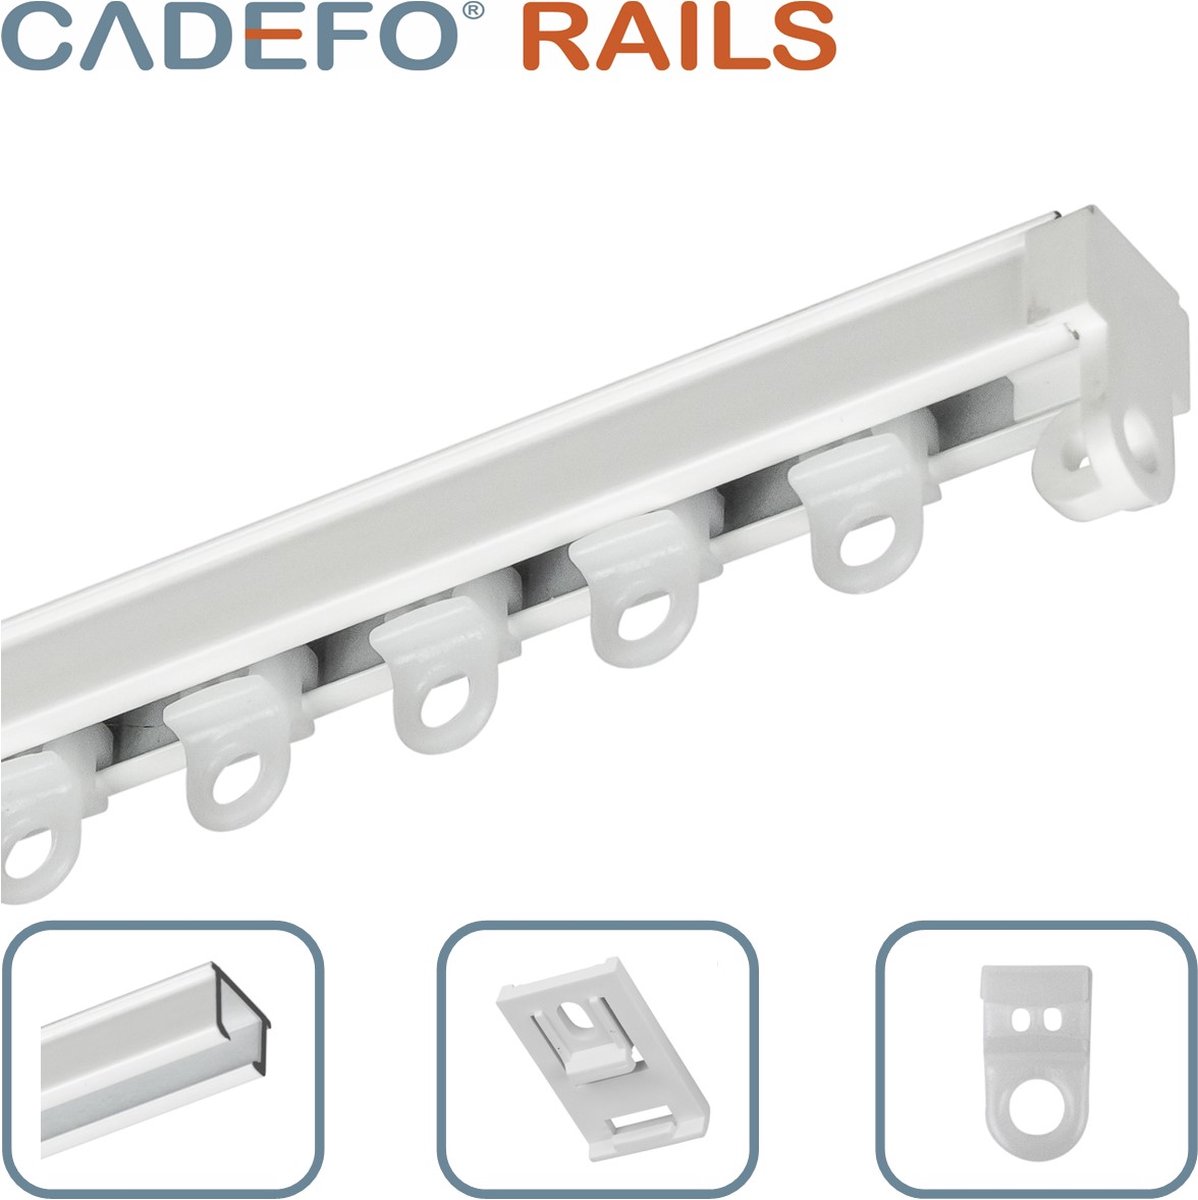 CADEFO RAILS (351 - 400 cm) Gordijnrails - Compleet op maat! - UIT 1 STUK - Leverbaar tot 6 meter - Plafondbevestiging - Lengte 361 cm